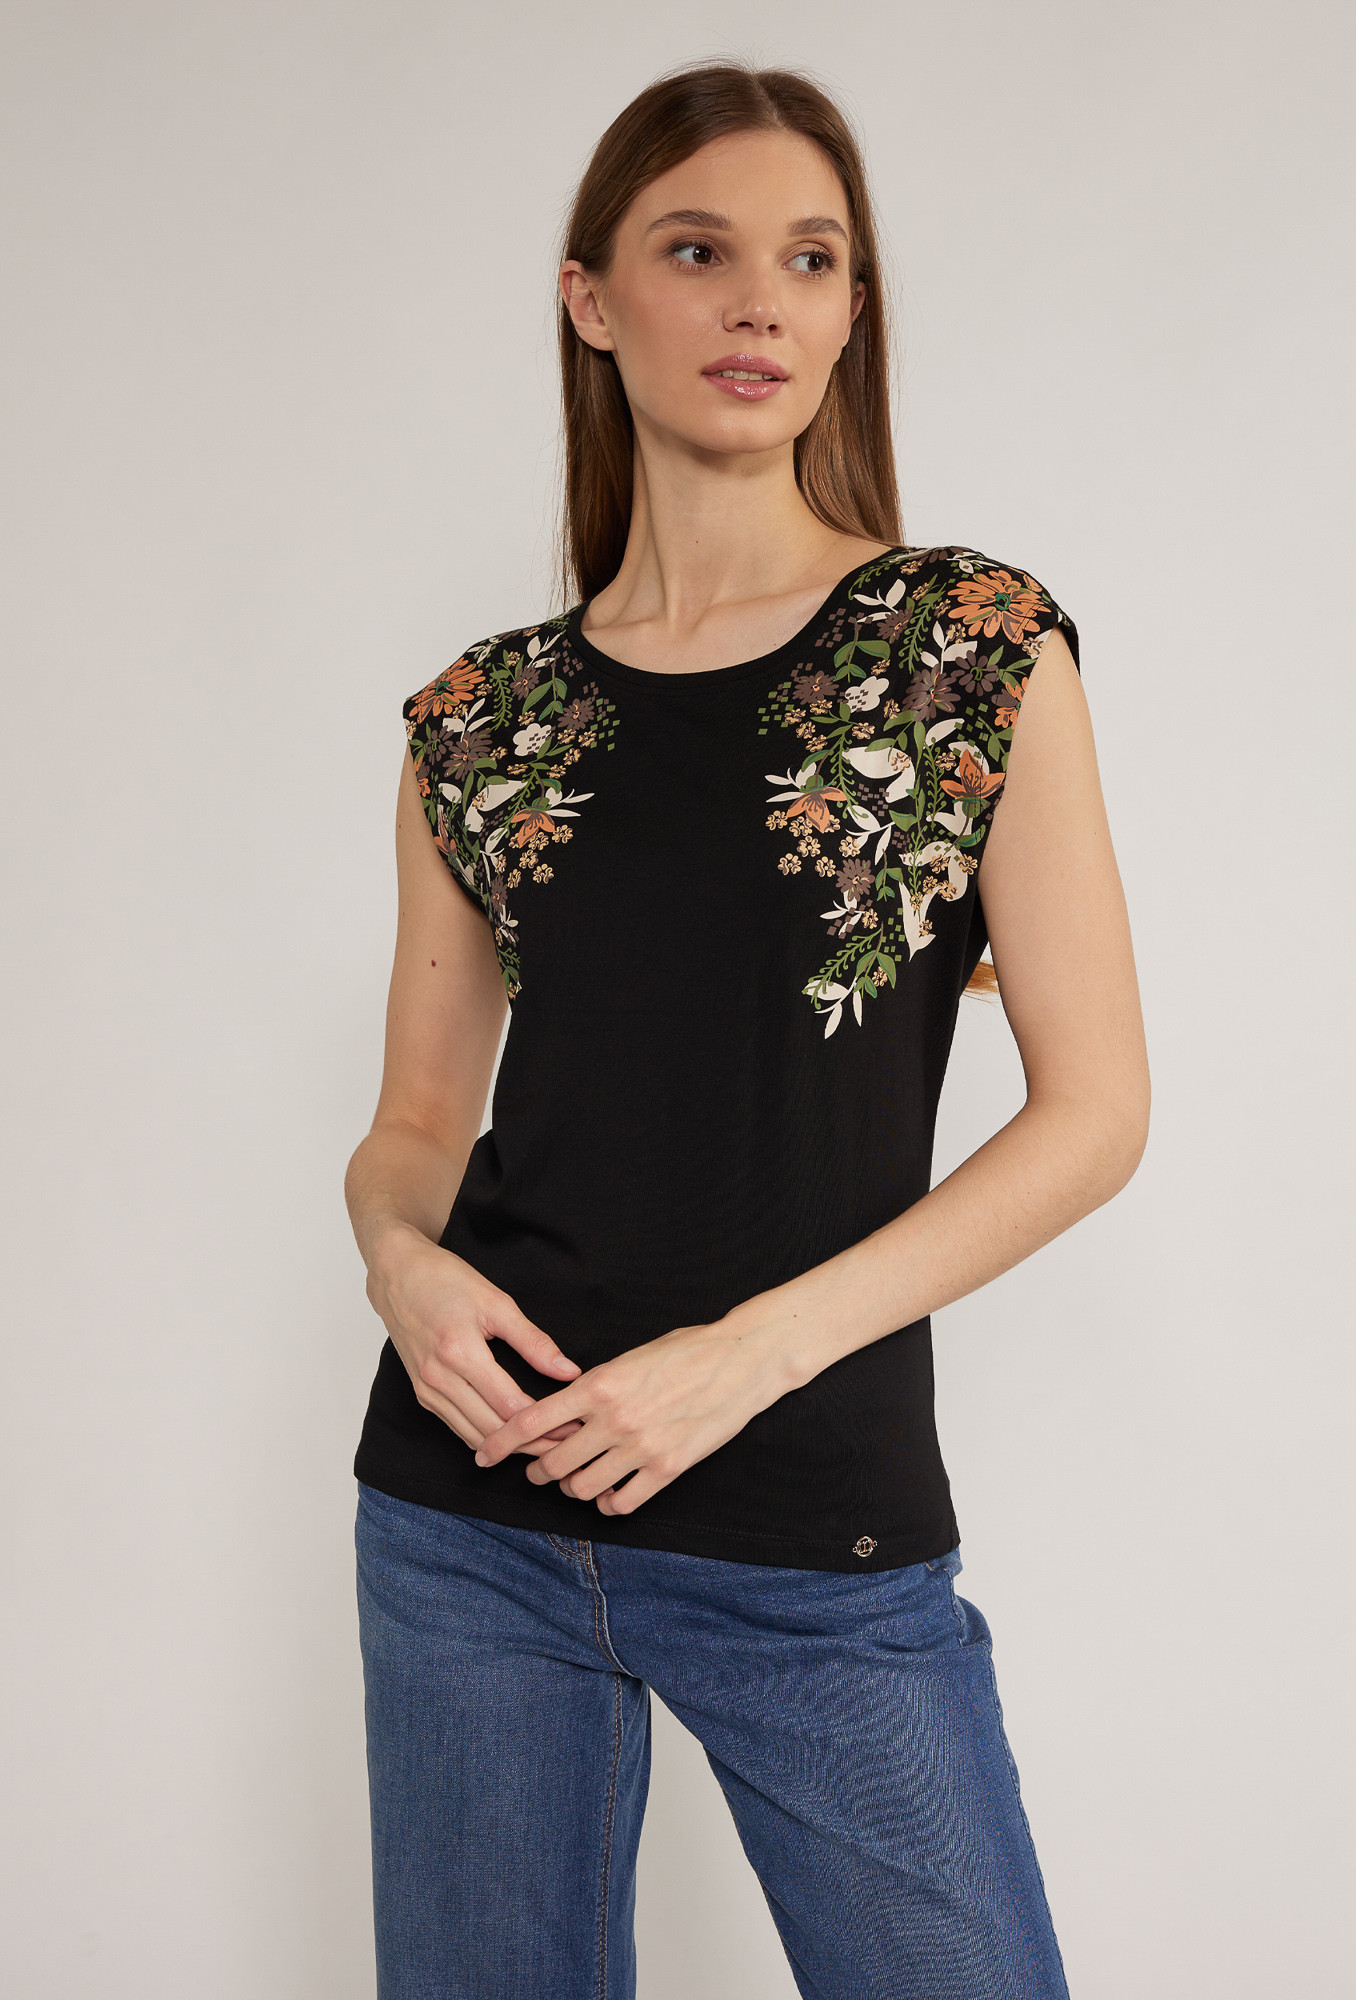 Dámské tričko s květinovým potiskem model 18523075 černé M - Monnari